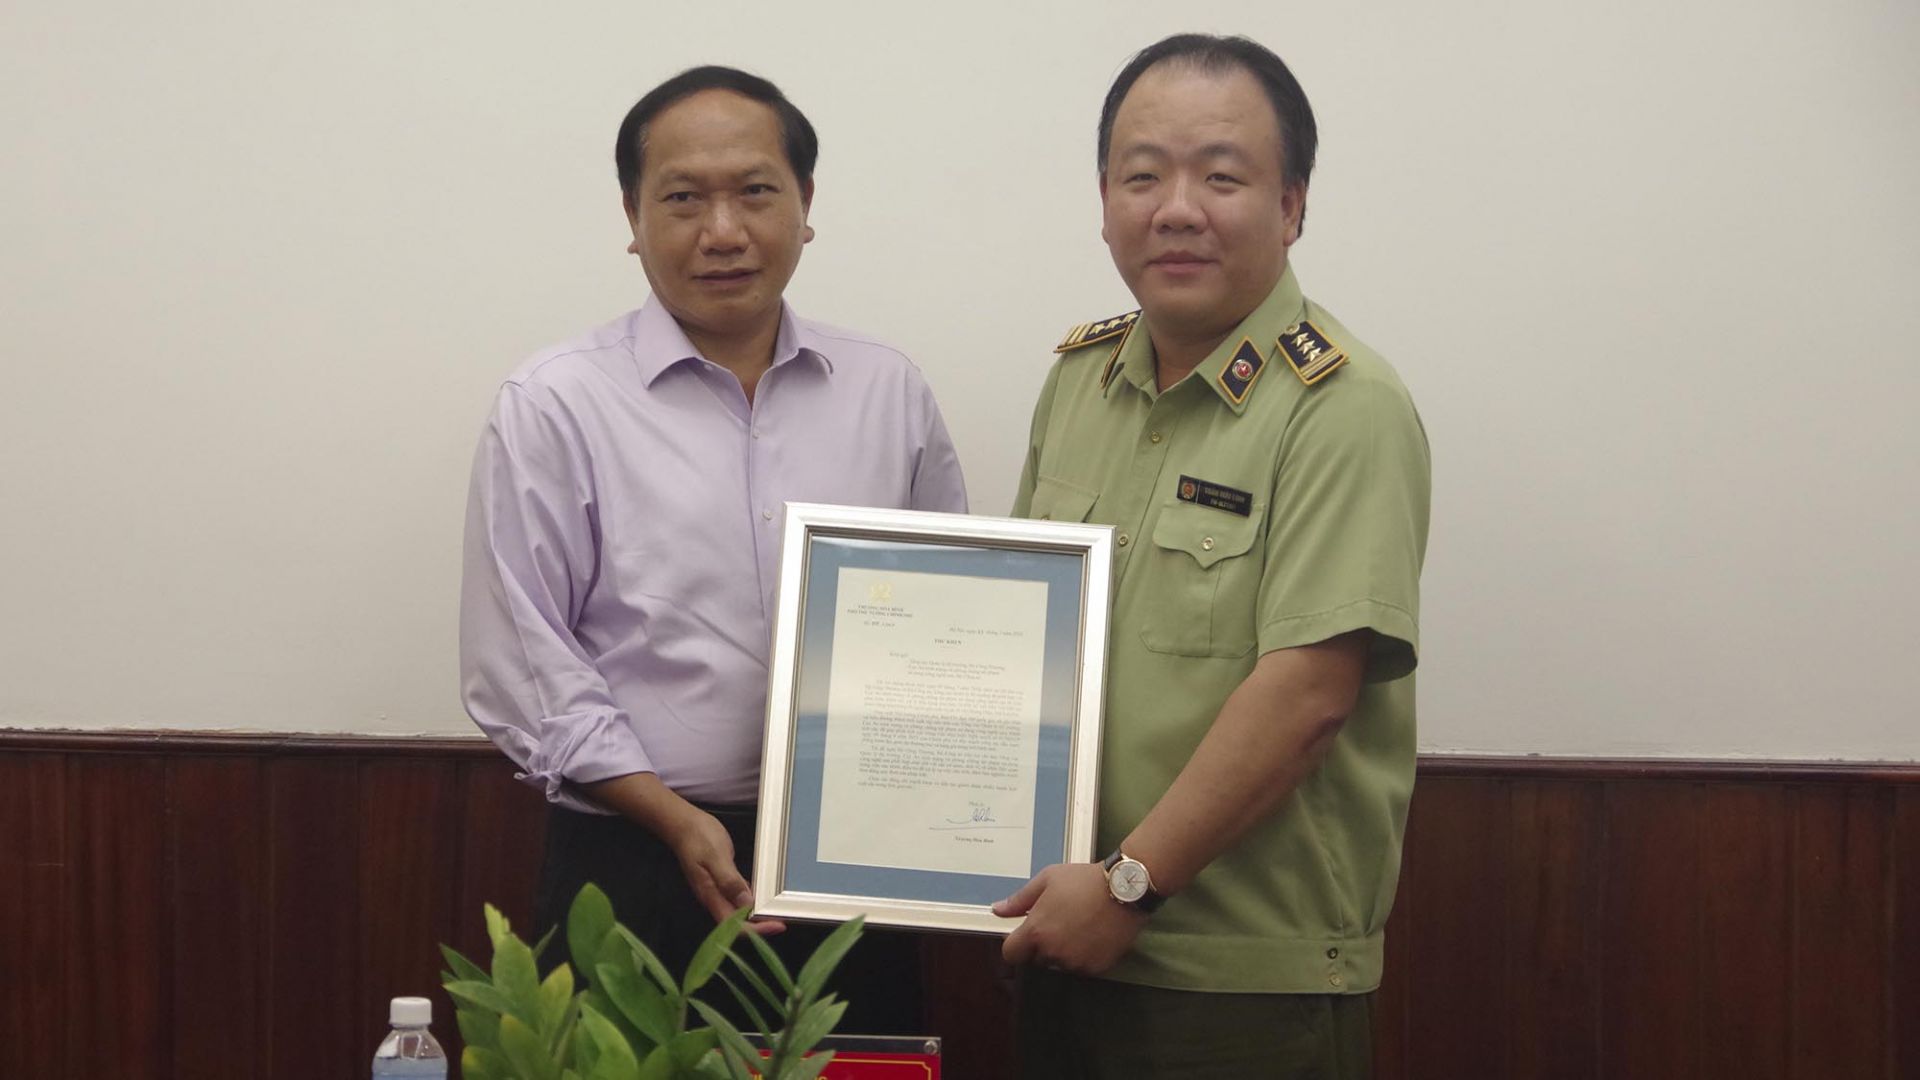 Thiếu tướng Đàm Thanh Thế đã trao thư khen của Phó Thủ tướng Thường trực - Trưởng Ban chỉ đạo 389 quốc gia Trương Hòa Bình cho Tổng cục QLTT vì đã có thành tích xuất sắc phát hiện xử lý kho chứa hàng không đúng quy định với số lượng lớn tại Lào Cai